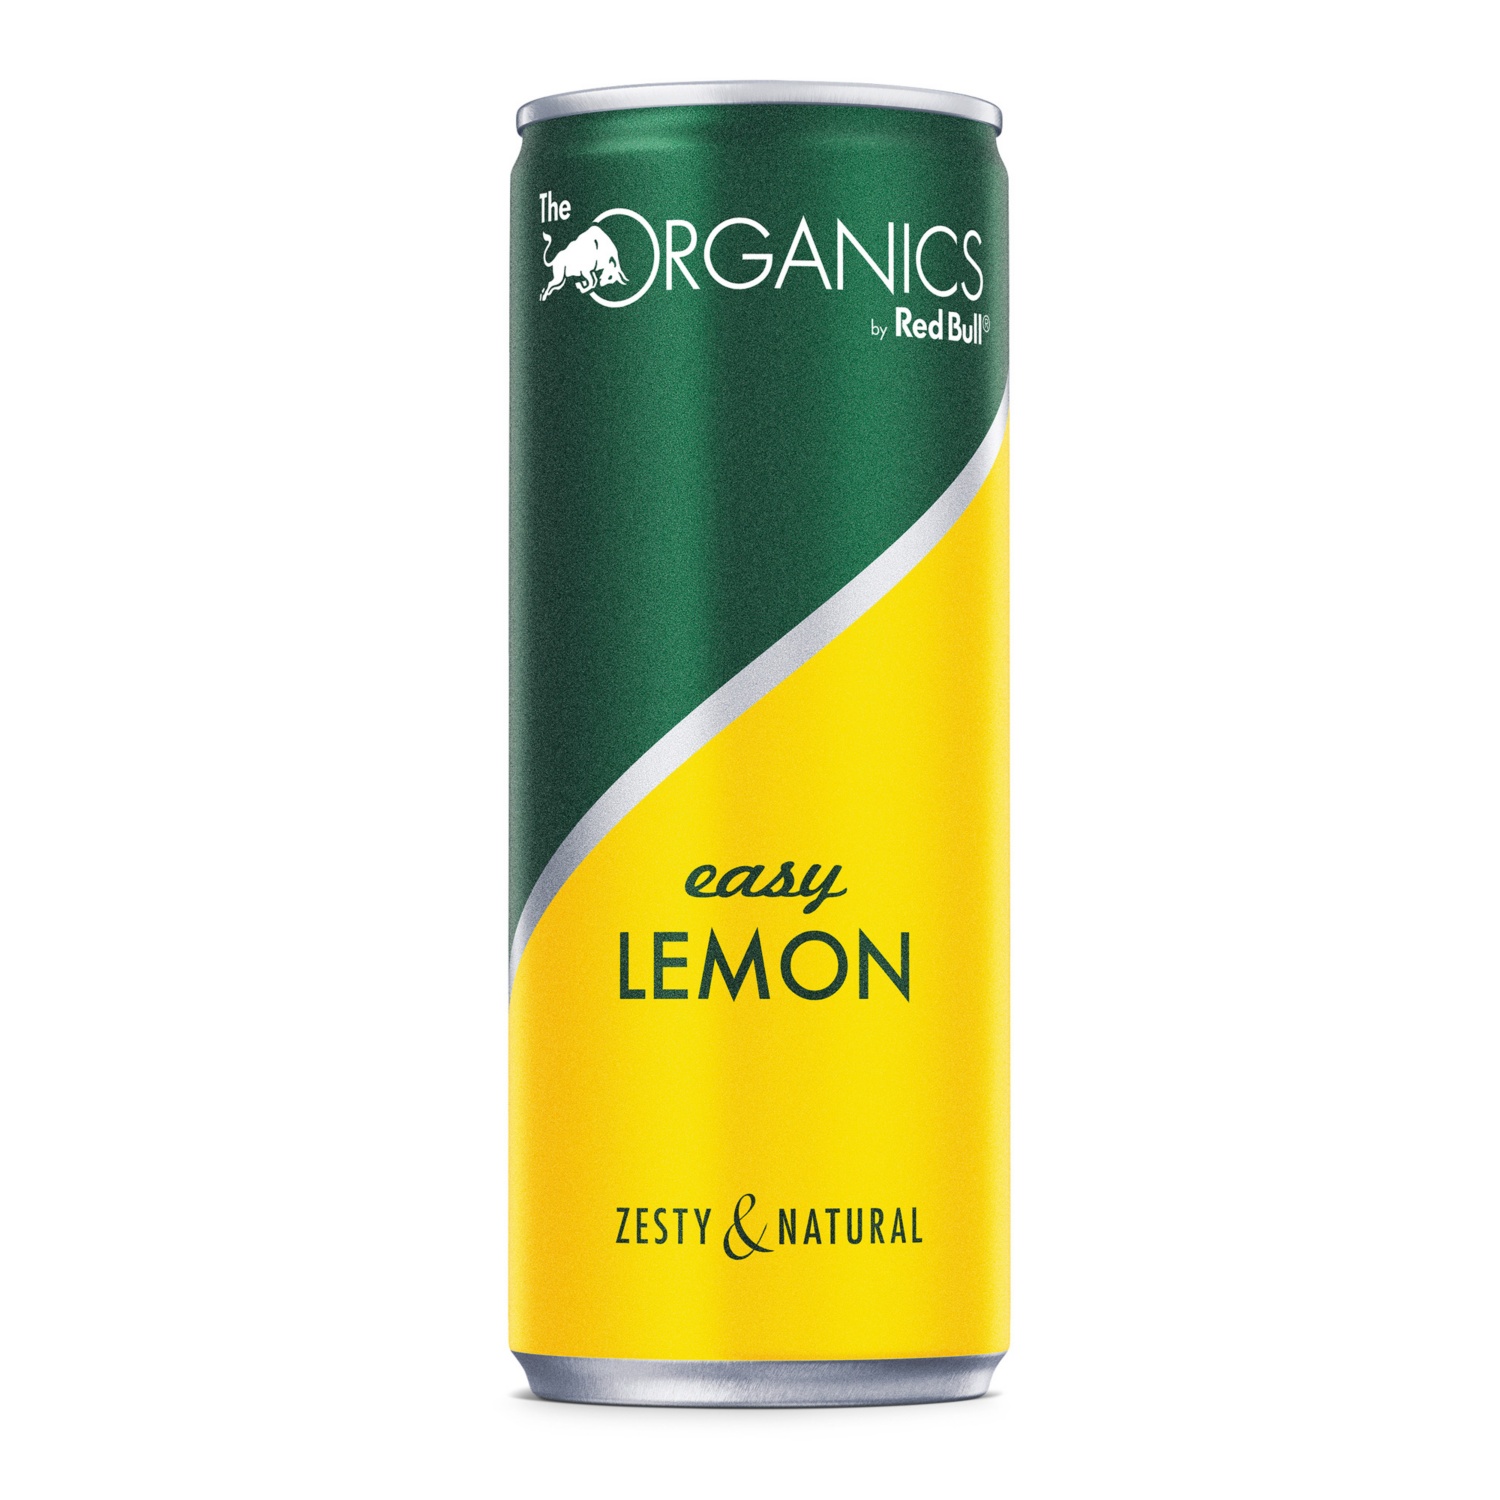 RED BULL Organics, Easy Lemon